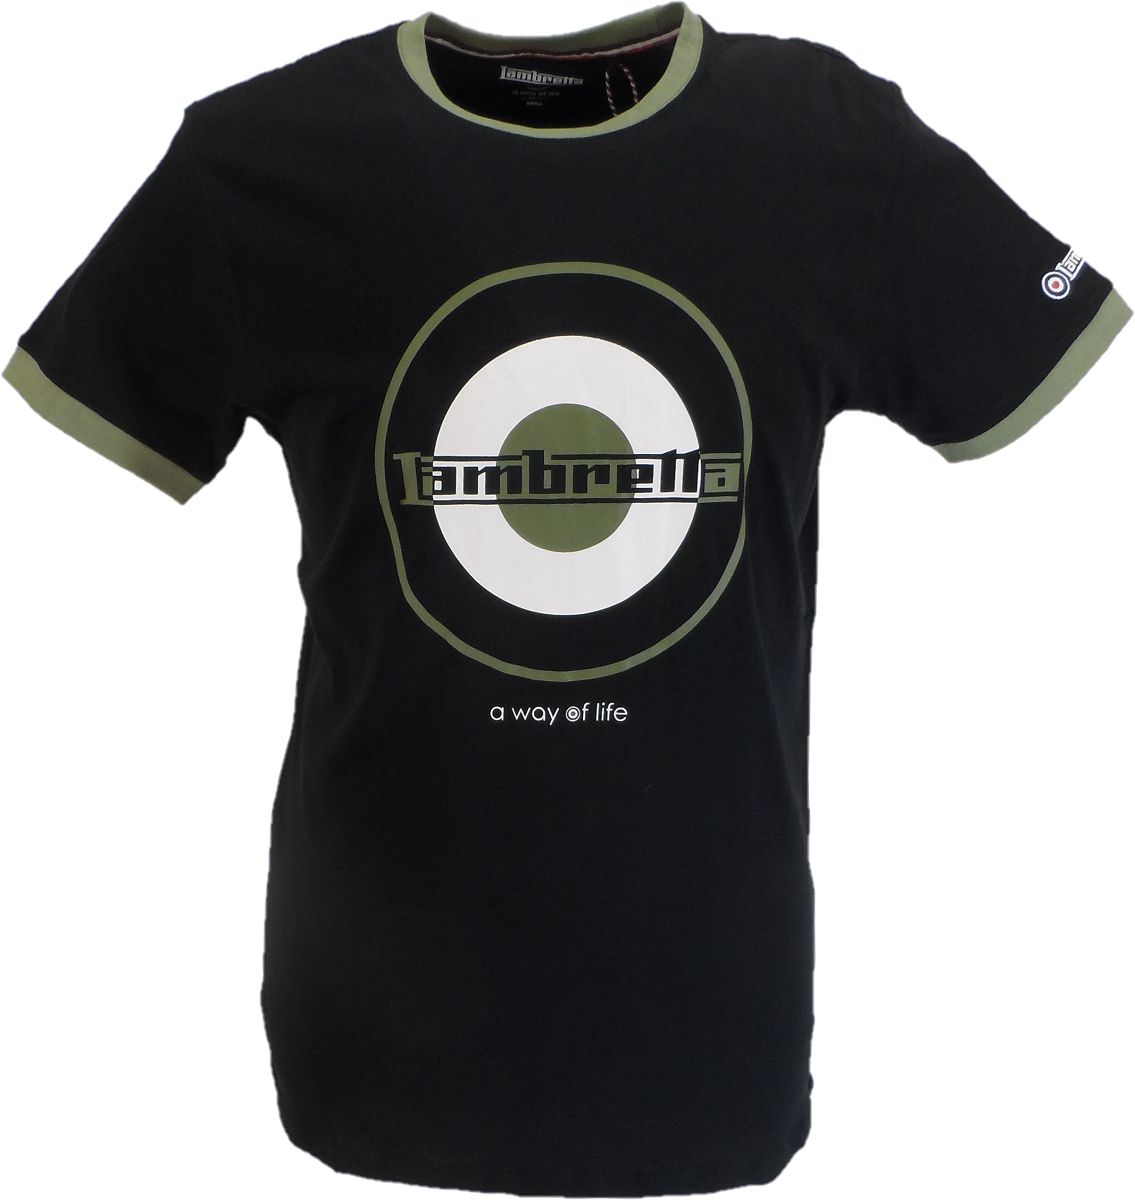 Lambretta Black Retro Target Ringer T-Shirt